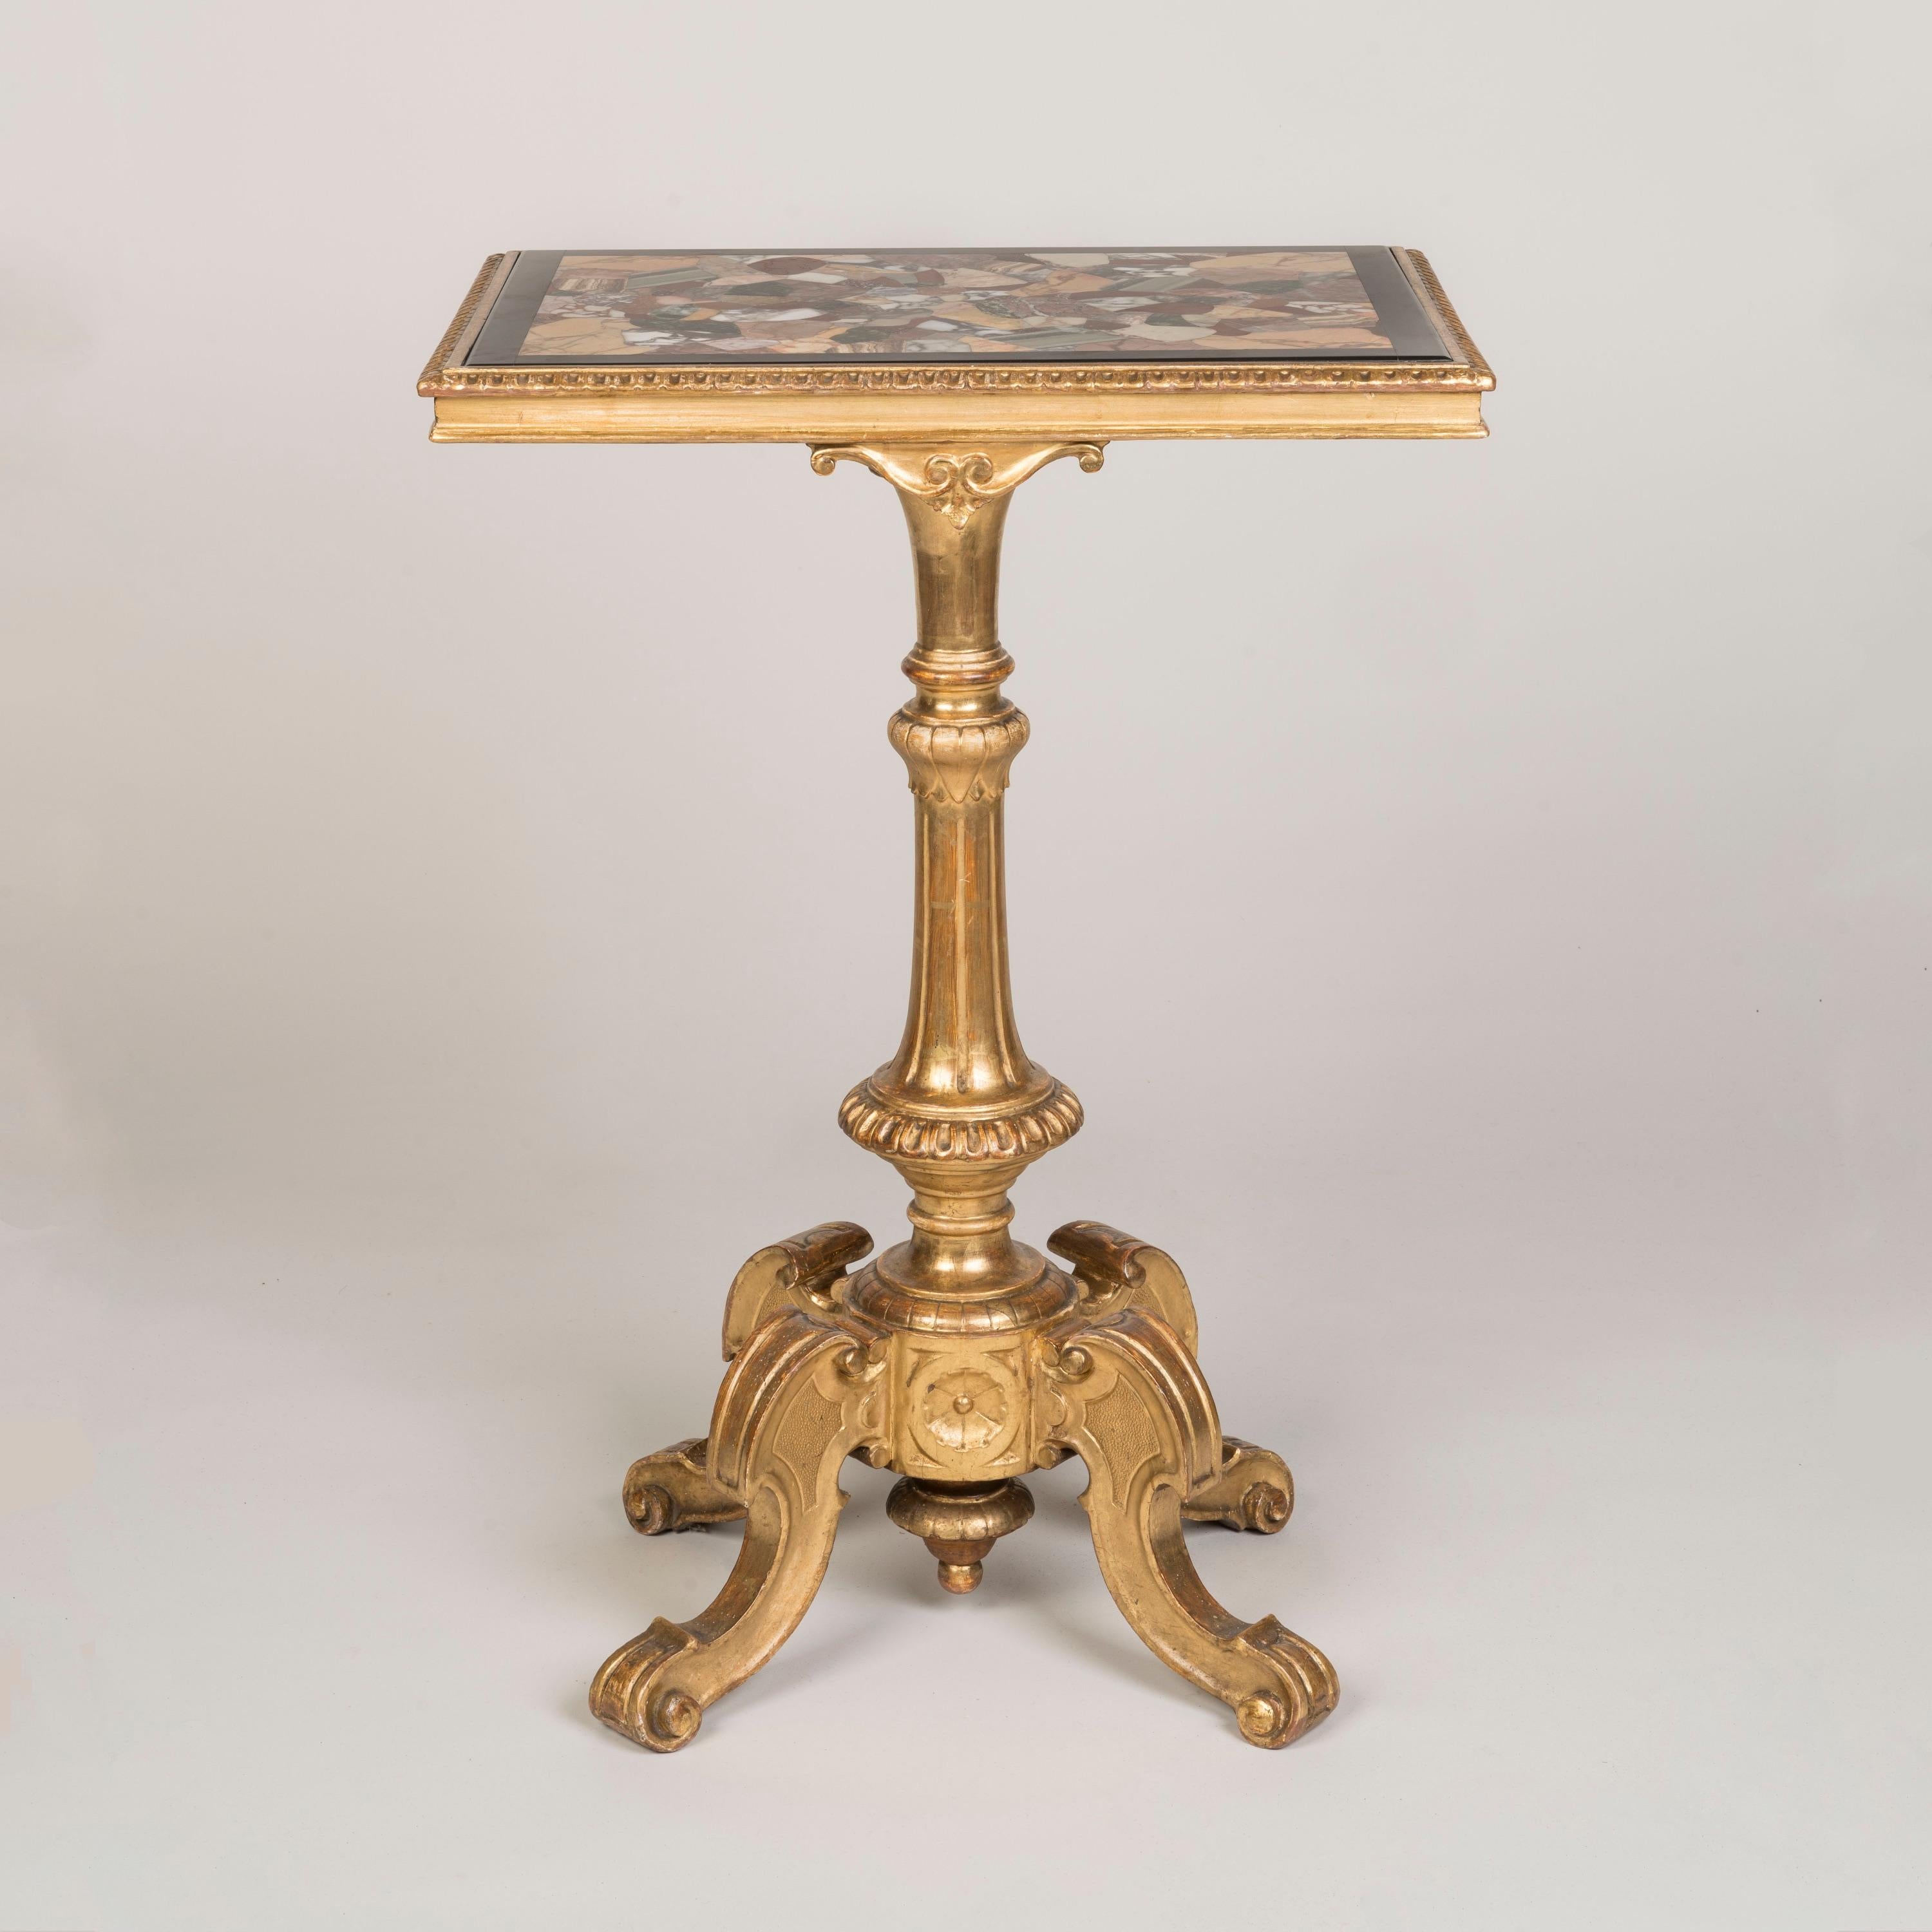 Ein italienischer Pietra-Dura-Tisch für den Beistelltisch

Aus geschnitztem, vergoldetem Holz, mit einer ungewöhnlichen rechteckigen Plattform mit Pietra-Dura-Intarsien; die Tischbeine enden in Schnecken, mit einem geschnitzten und kannelierten